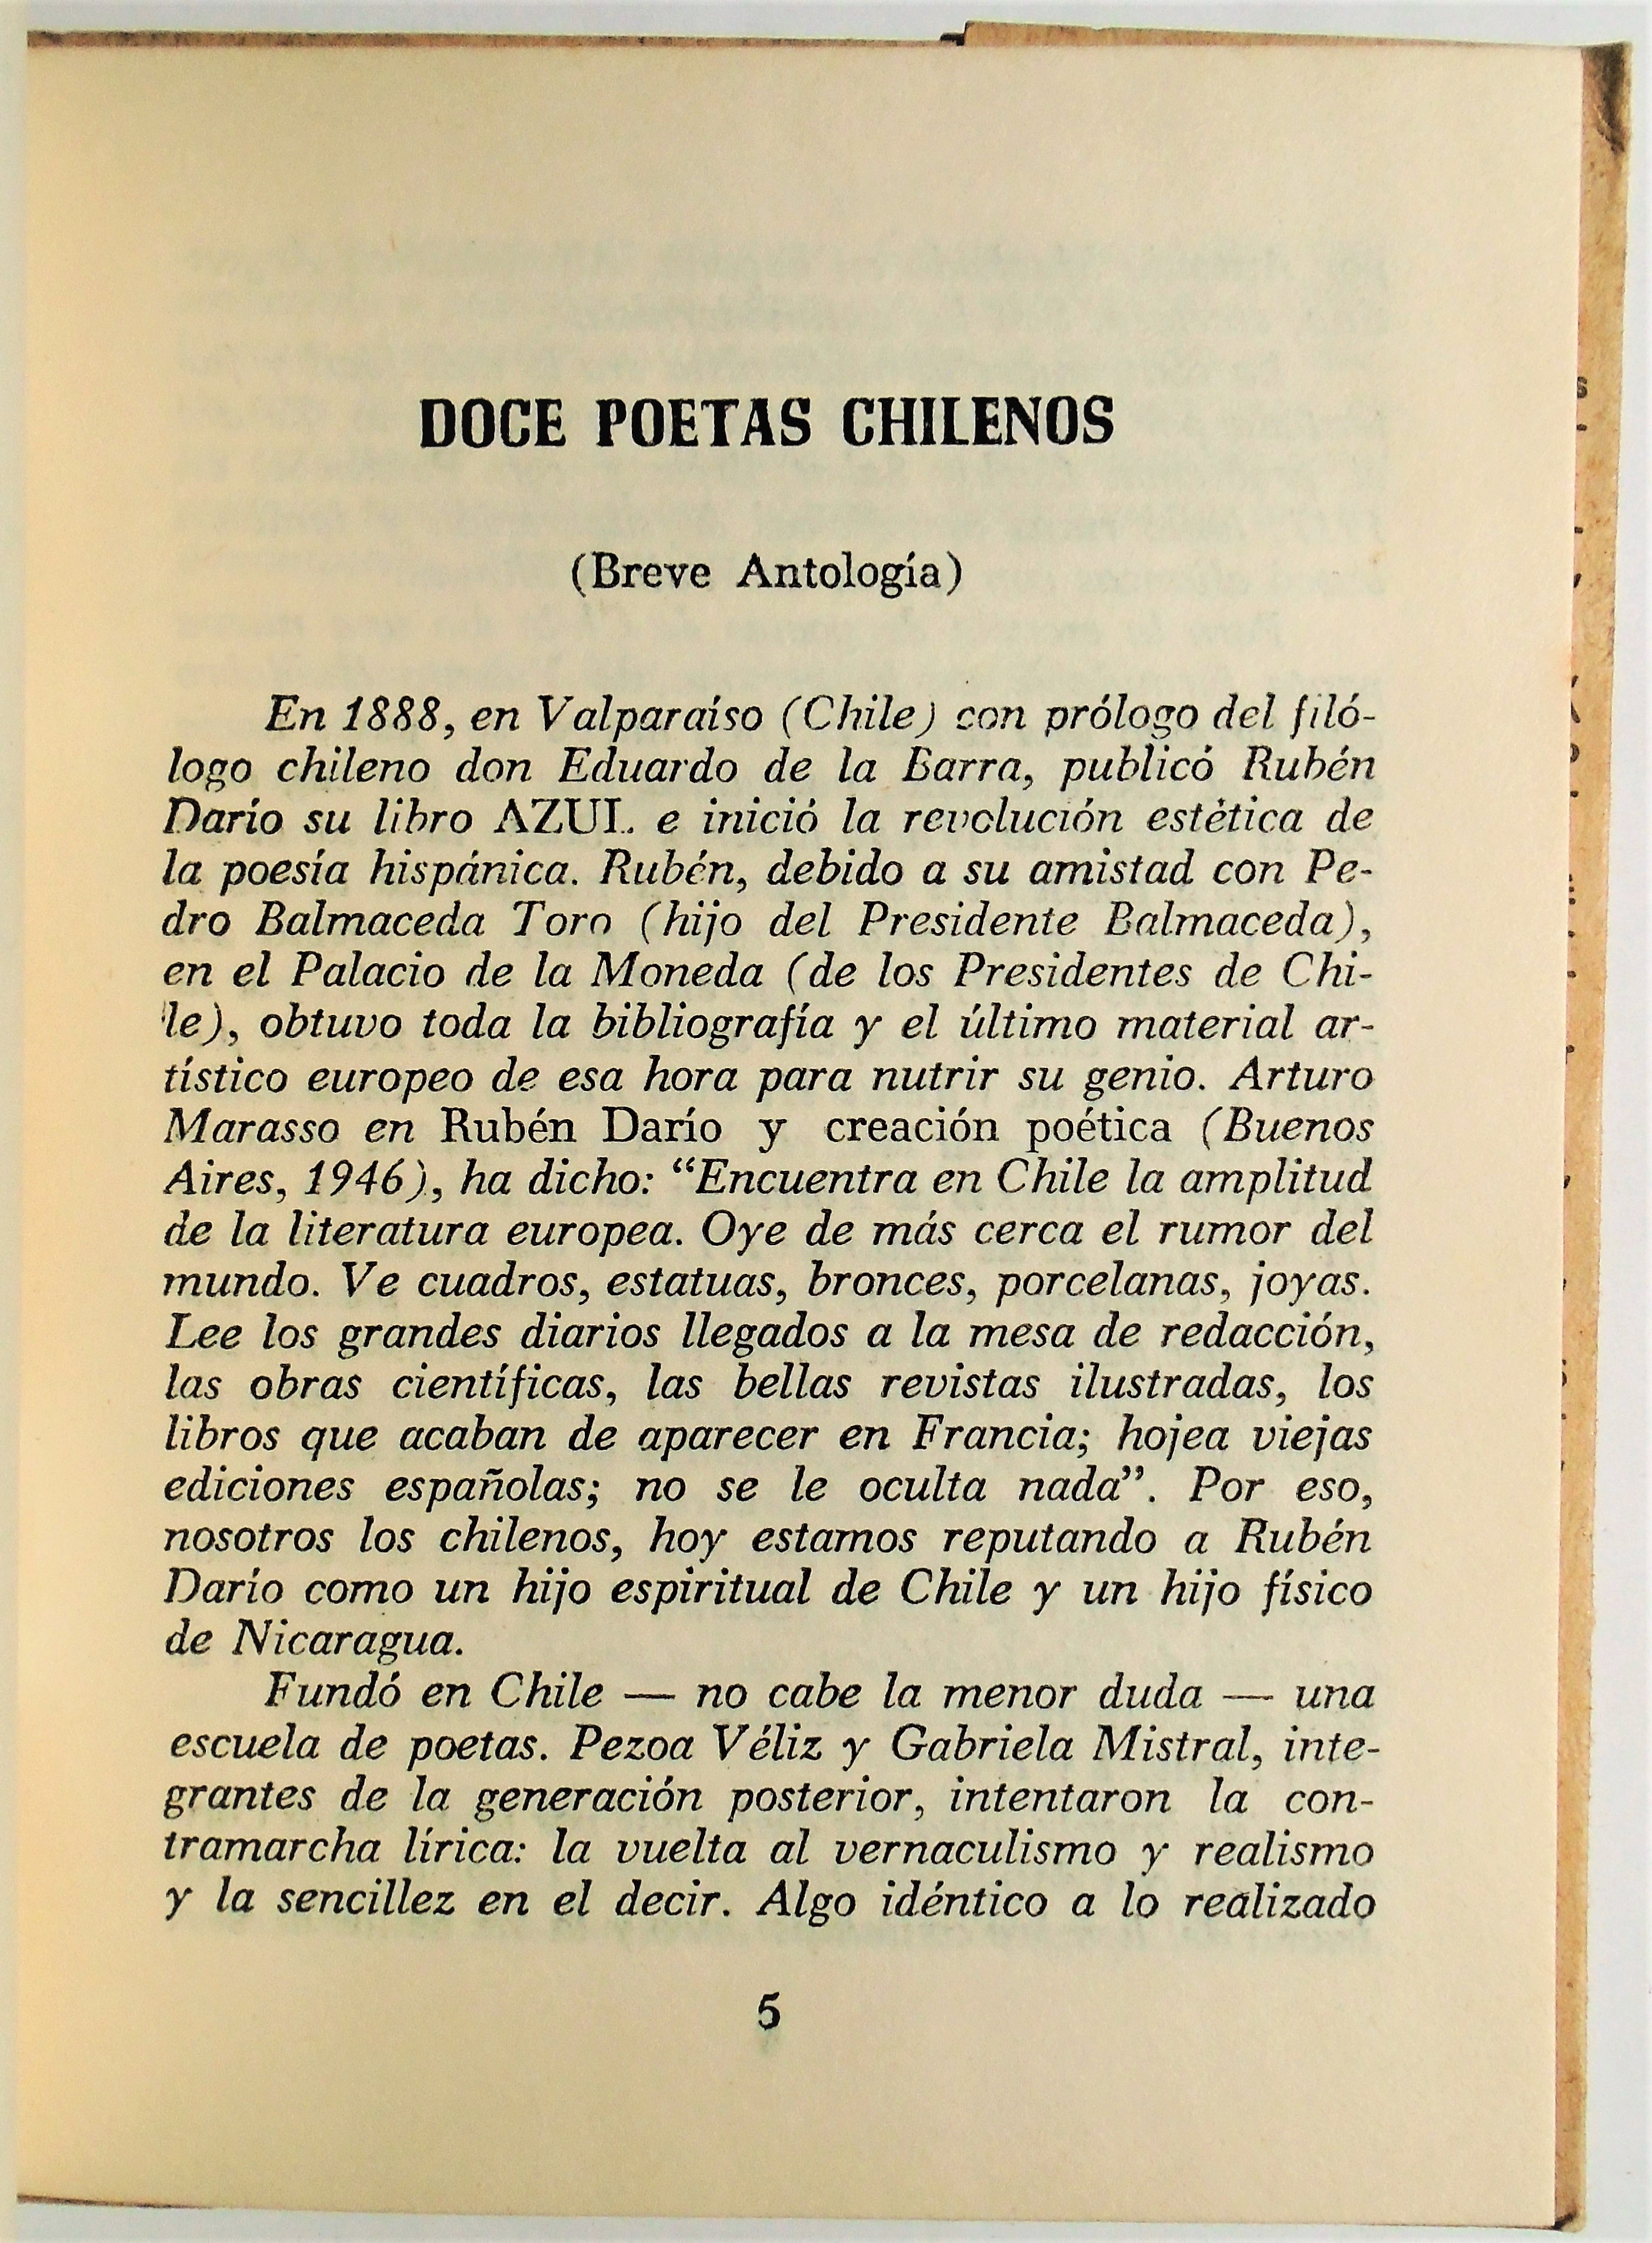 Doce Poetas Chilenos - Antonio de Undurraga